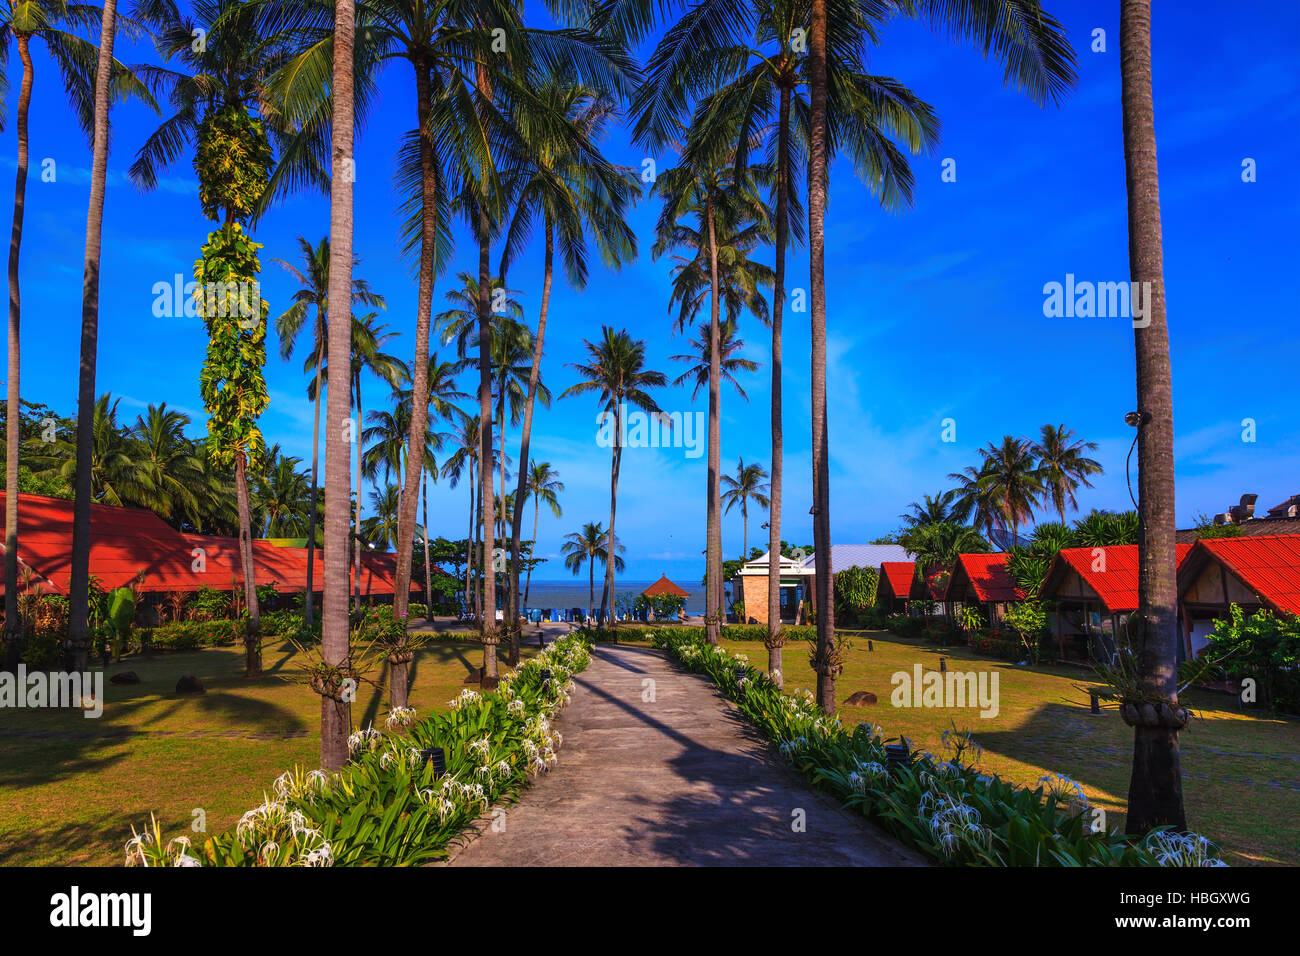 La passerella è circondato da alberi di palma Foto Stock